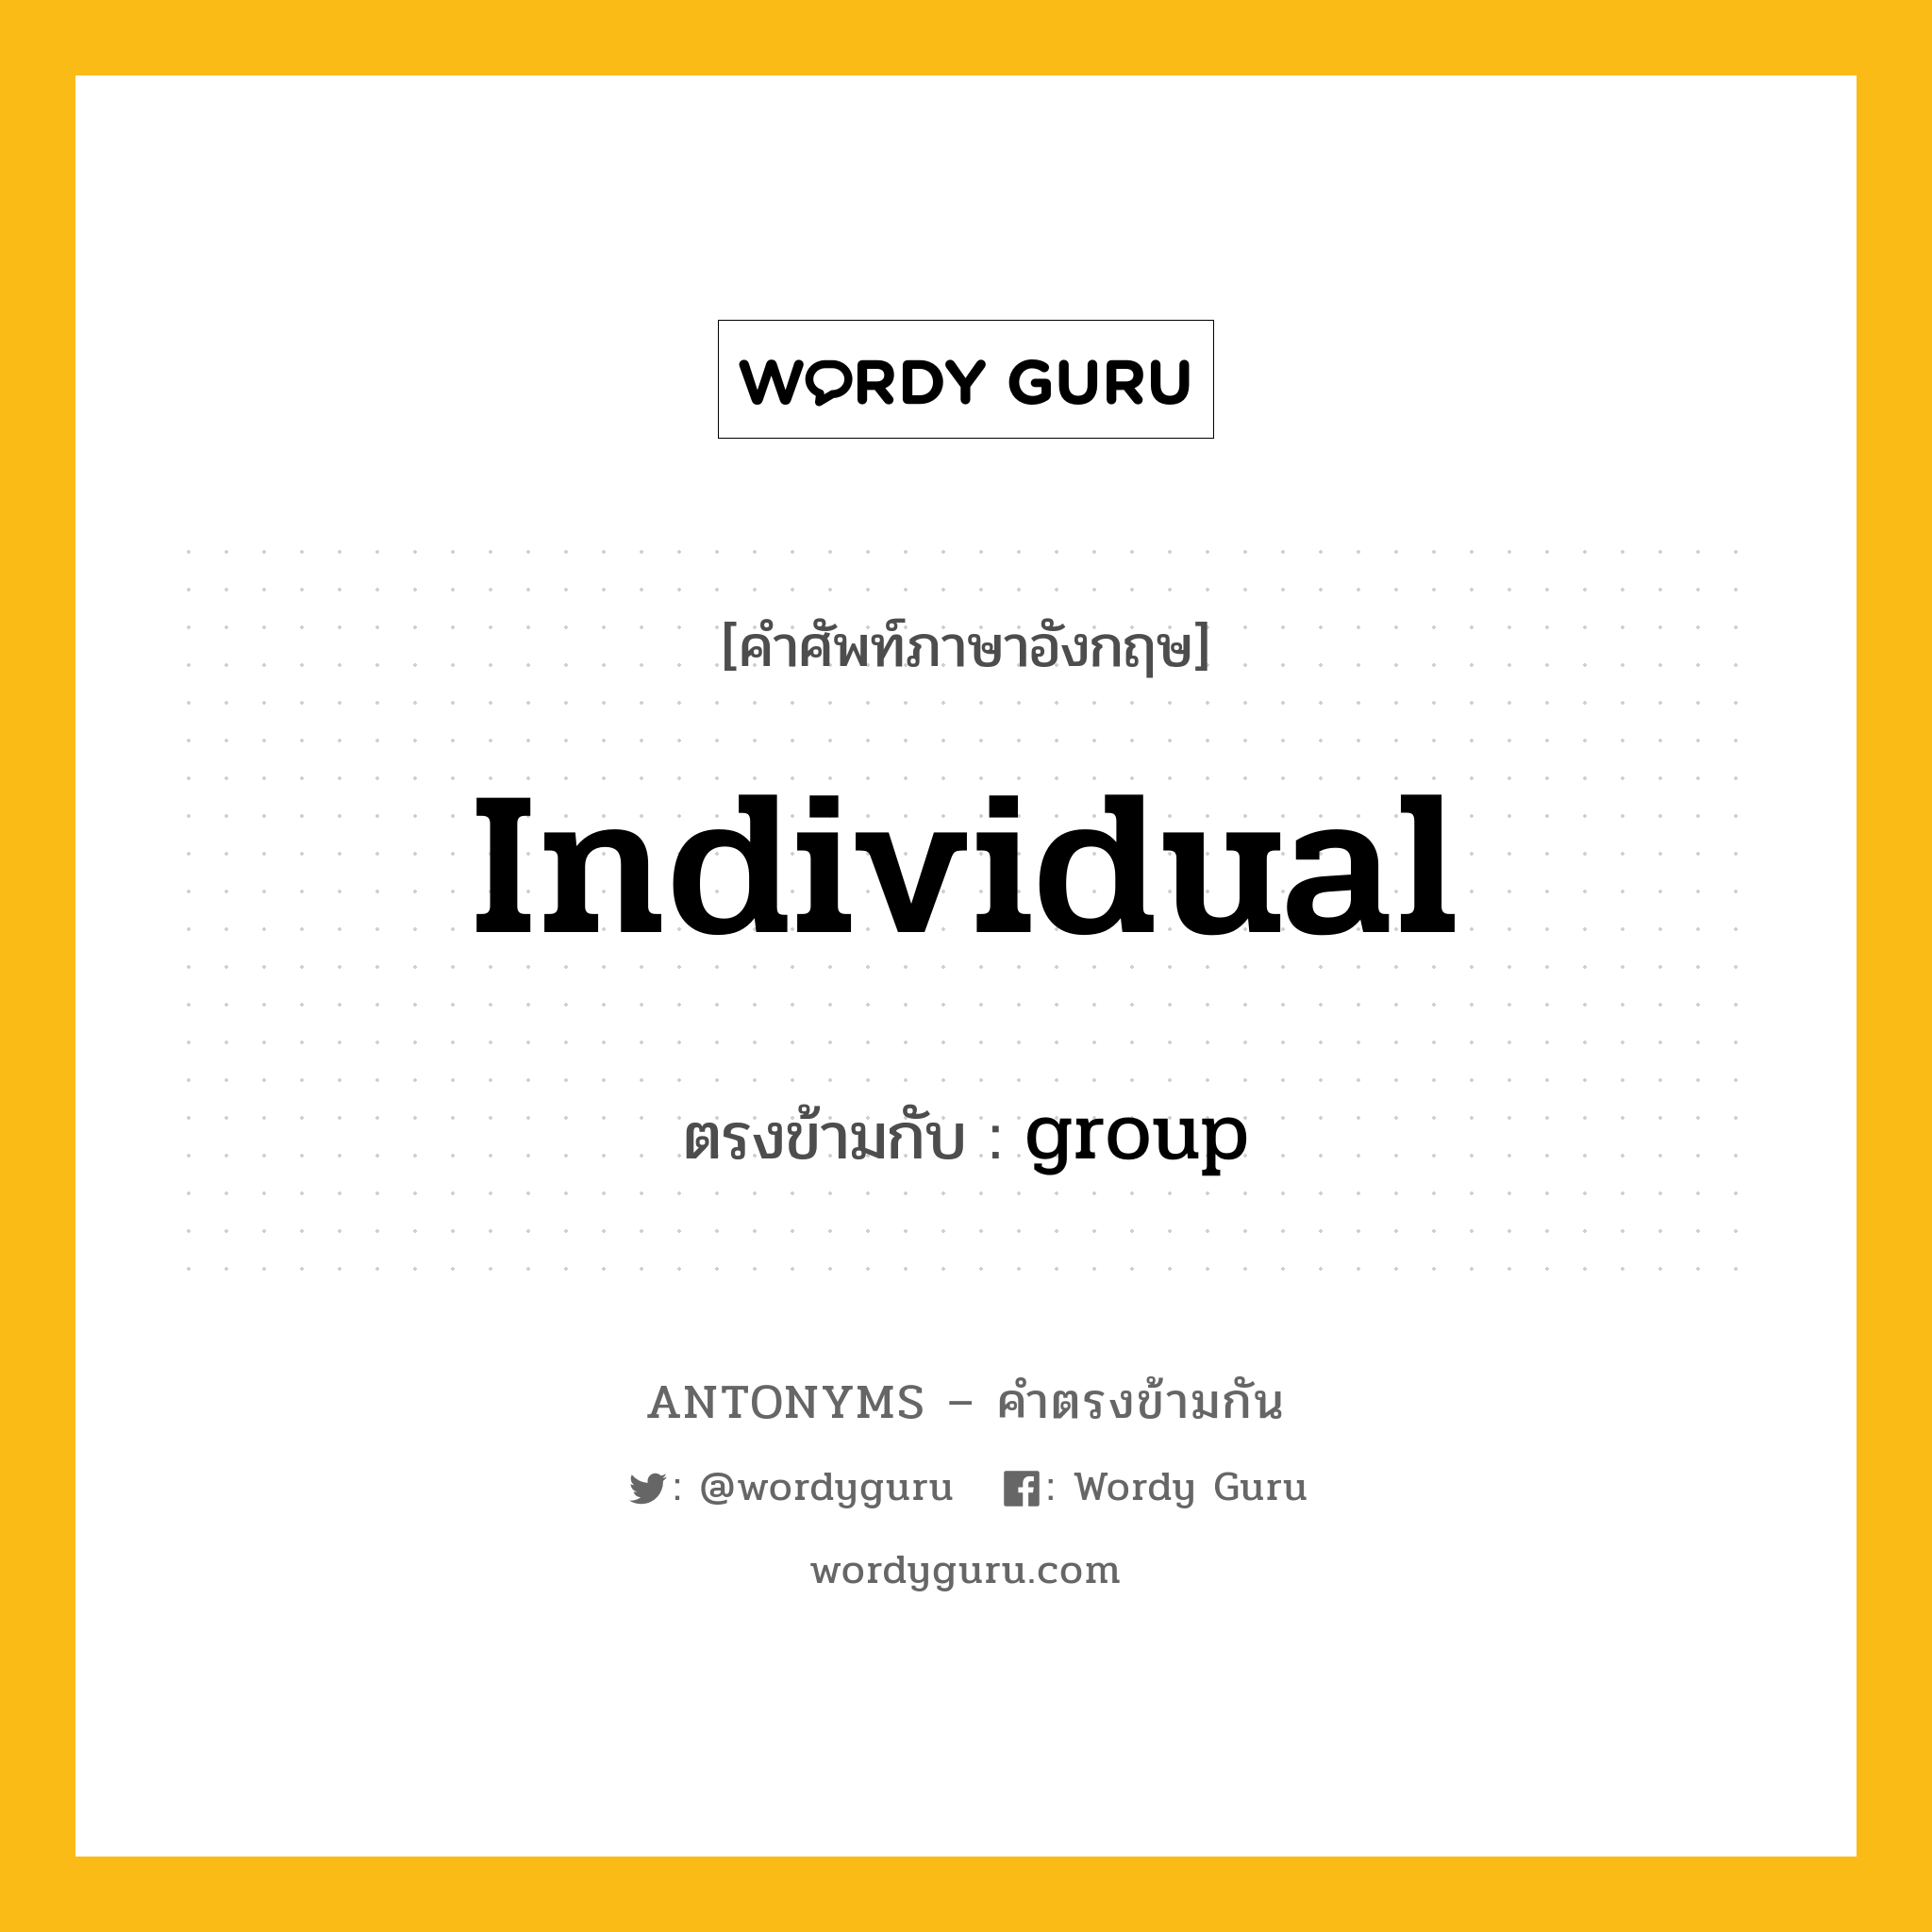 individual เป็นคำตรงข้ามกับคำไหนบ้าง?, คำศัพท์ภาษาอังกฤษ individual ตรงข้ามกับ group หมวด group